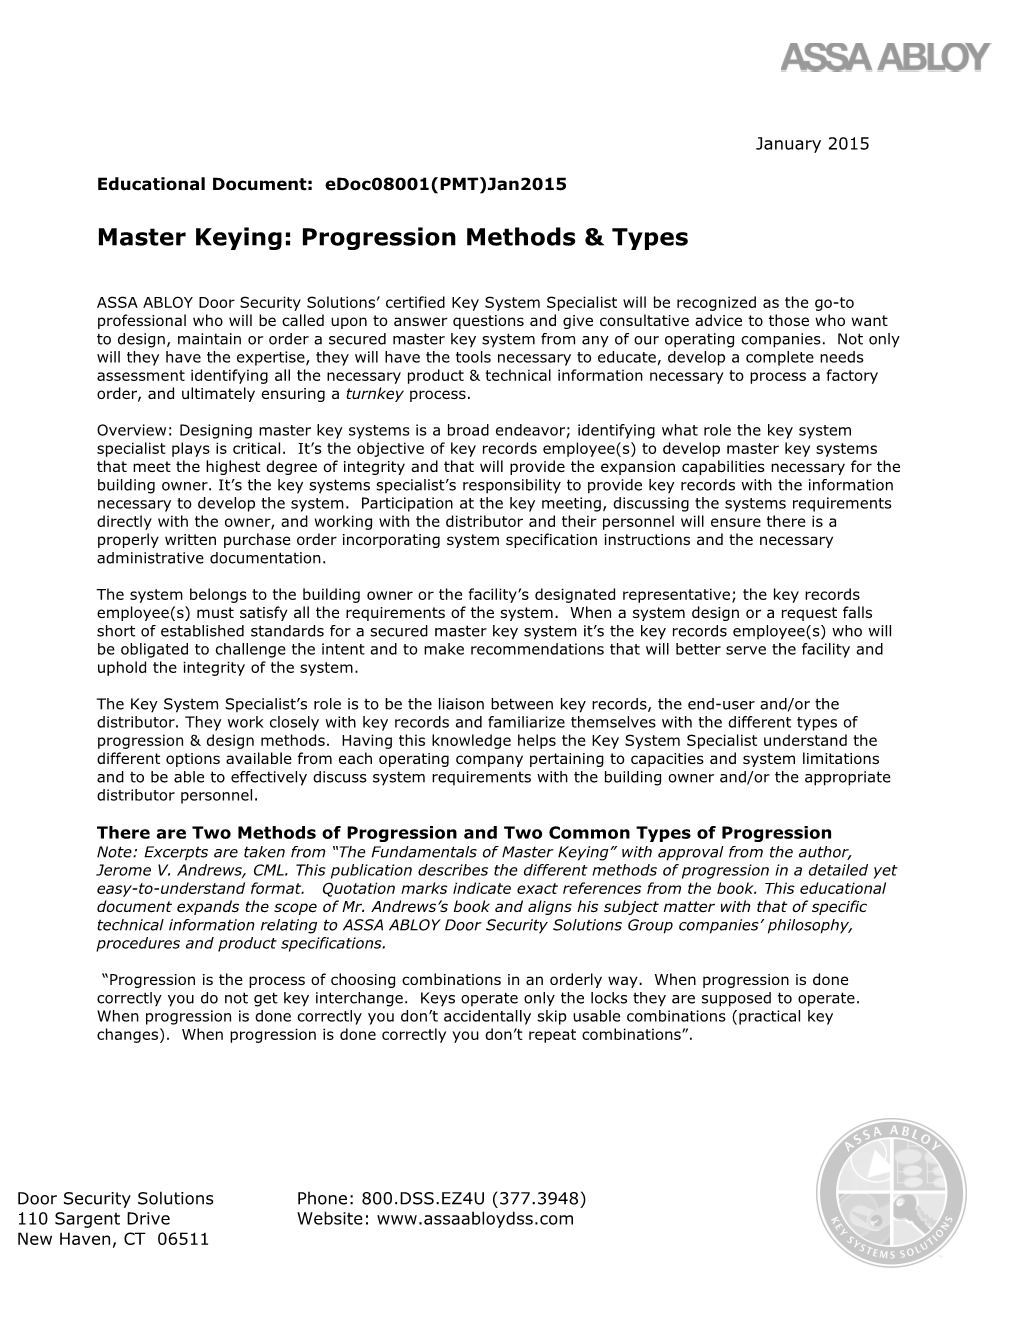 Master Keying: Progression Methods & Types